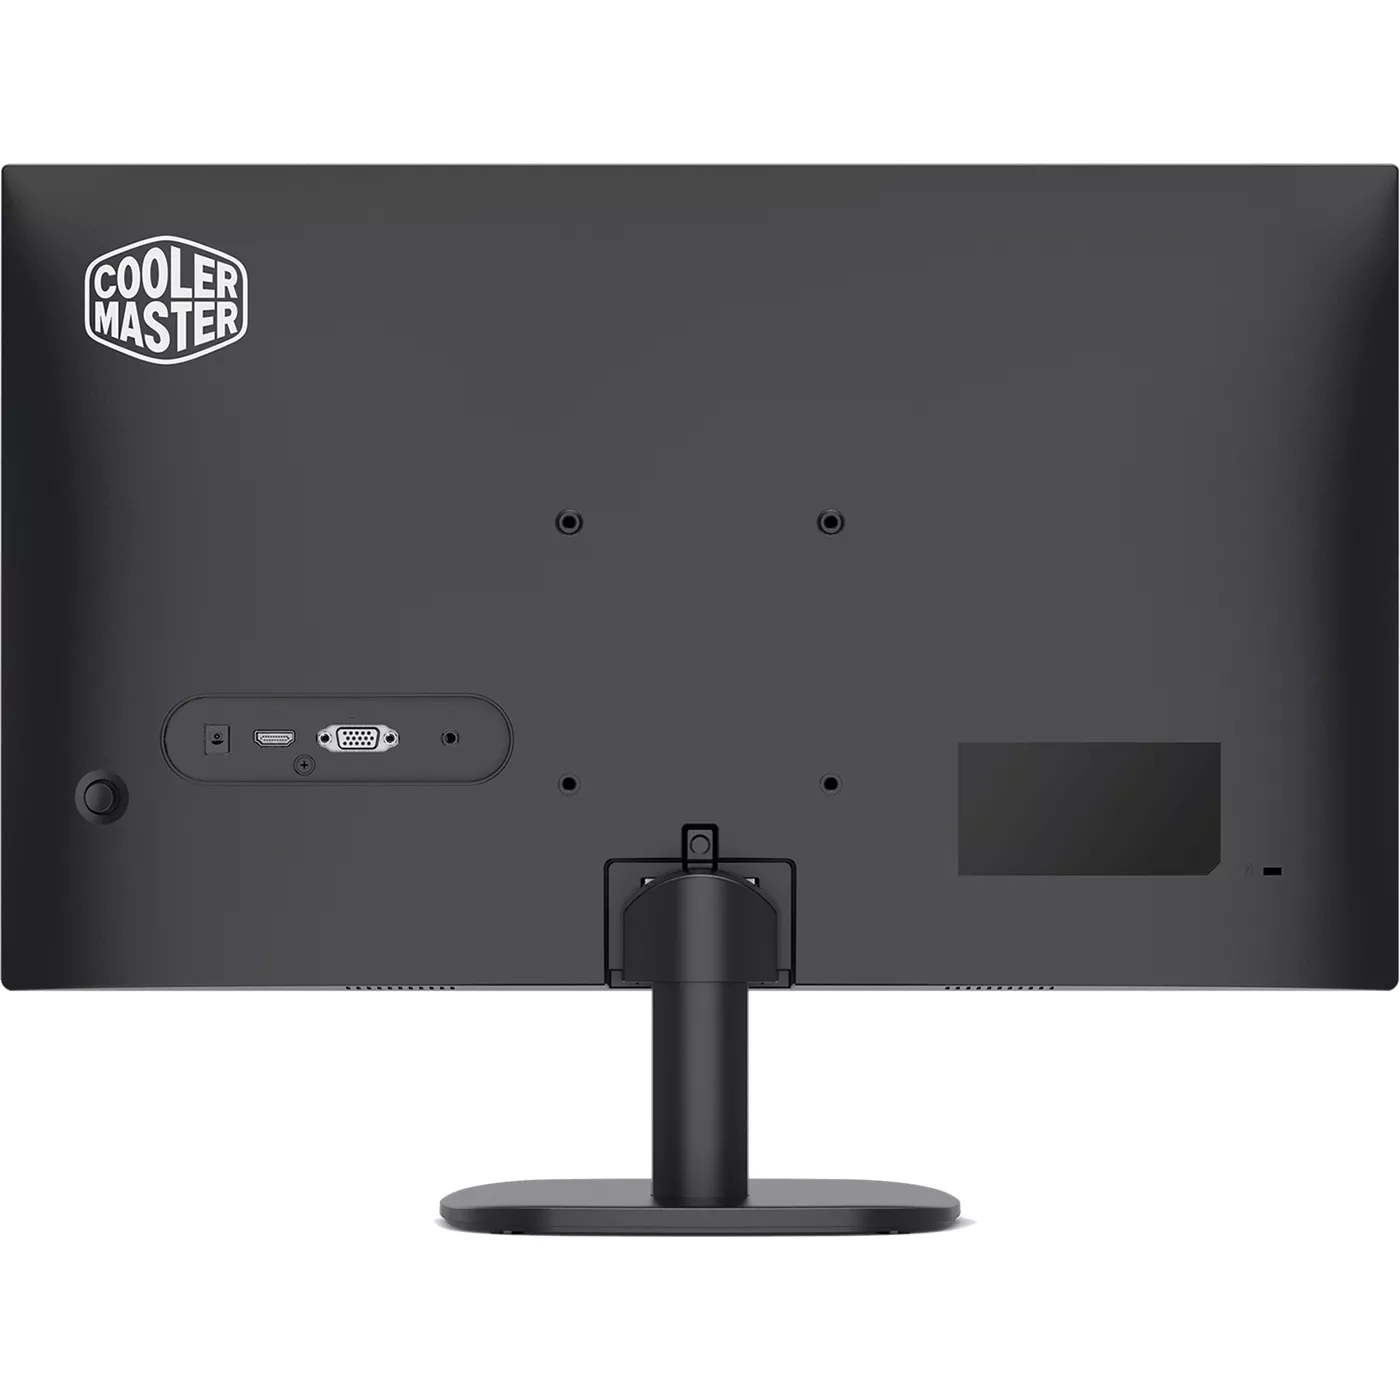 Monitor Gamer Cooler Master GA241, 23.8“ Full HD, Panel VA, 100hz, 1ms, VGA, HDMI, FreeSync - CMI-GA241